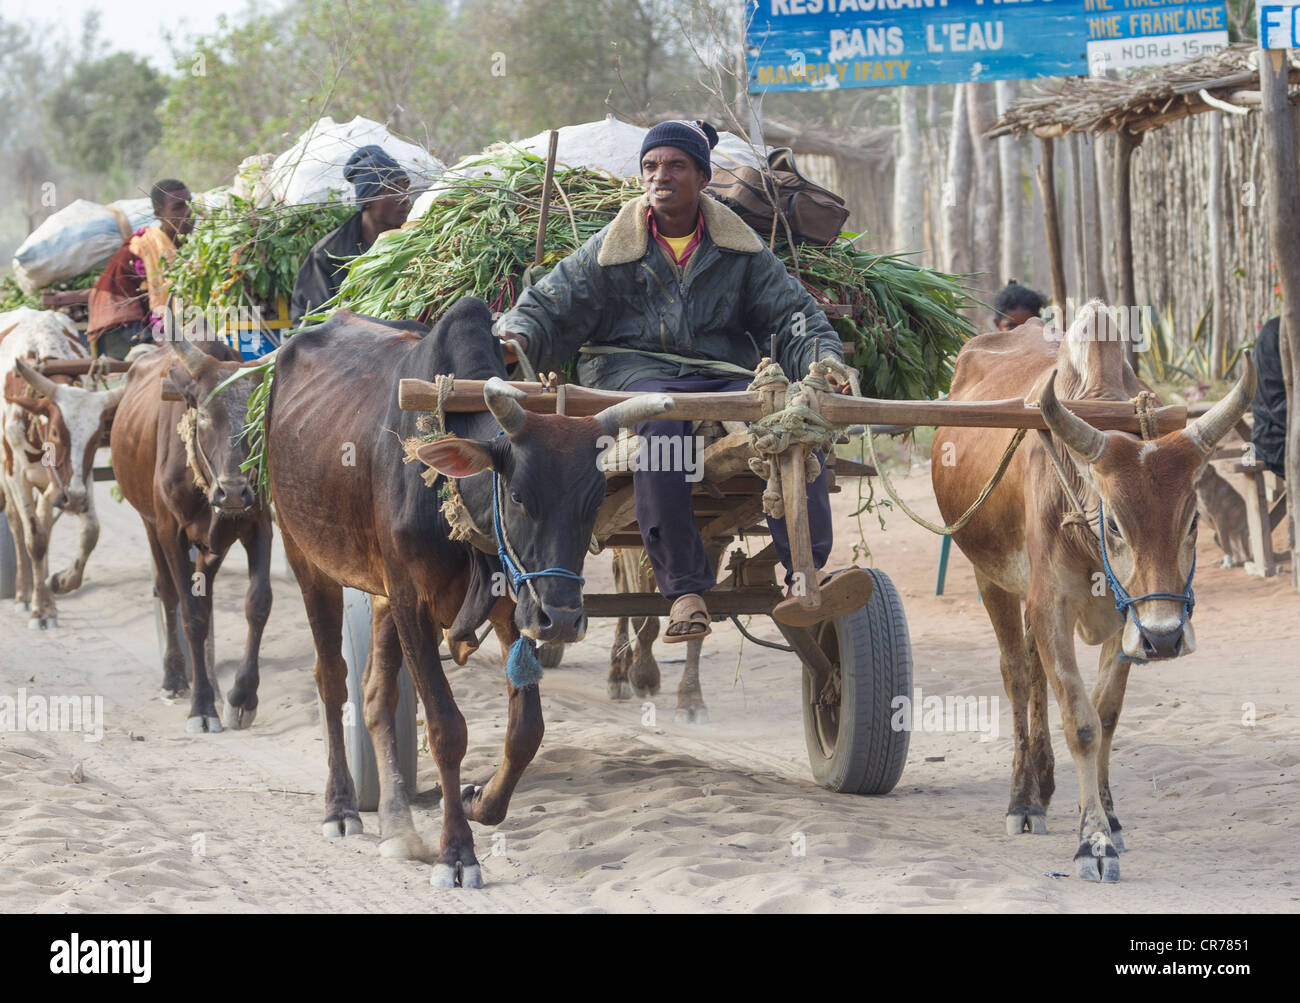 La conduite des hommes de chars à bœufs, Ifaty, Madagascar Banque D'Images